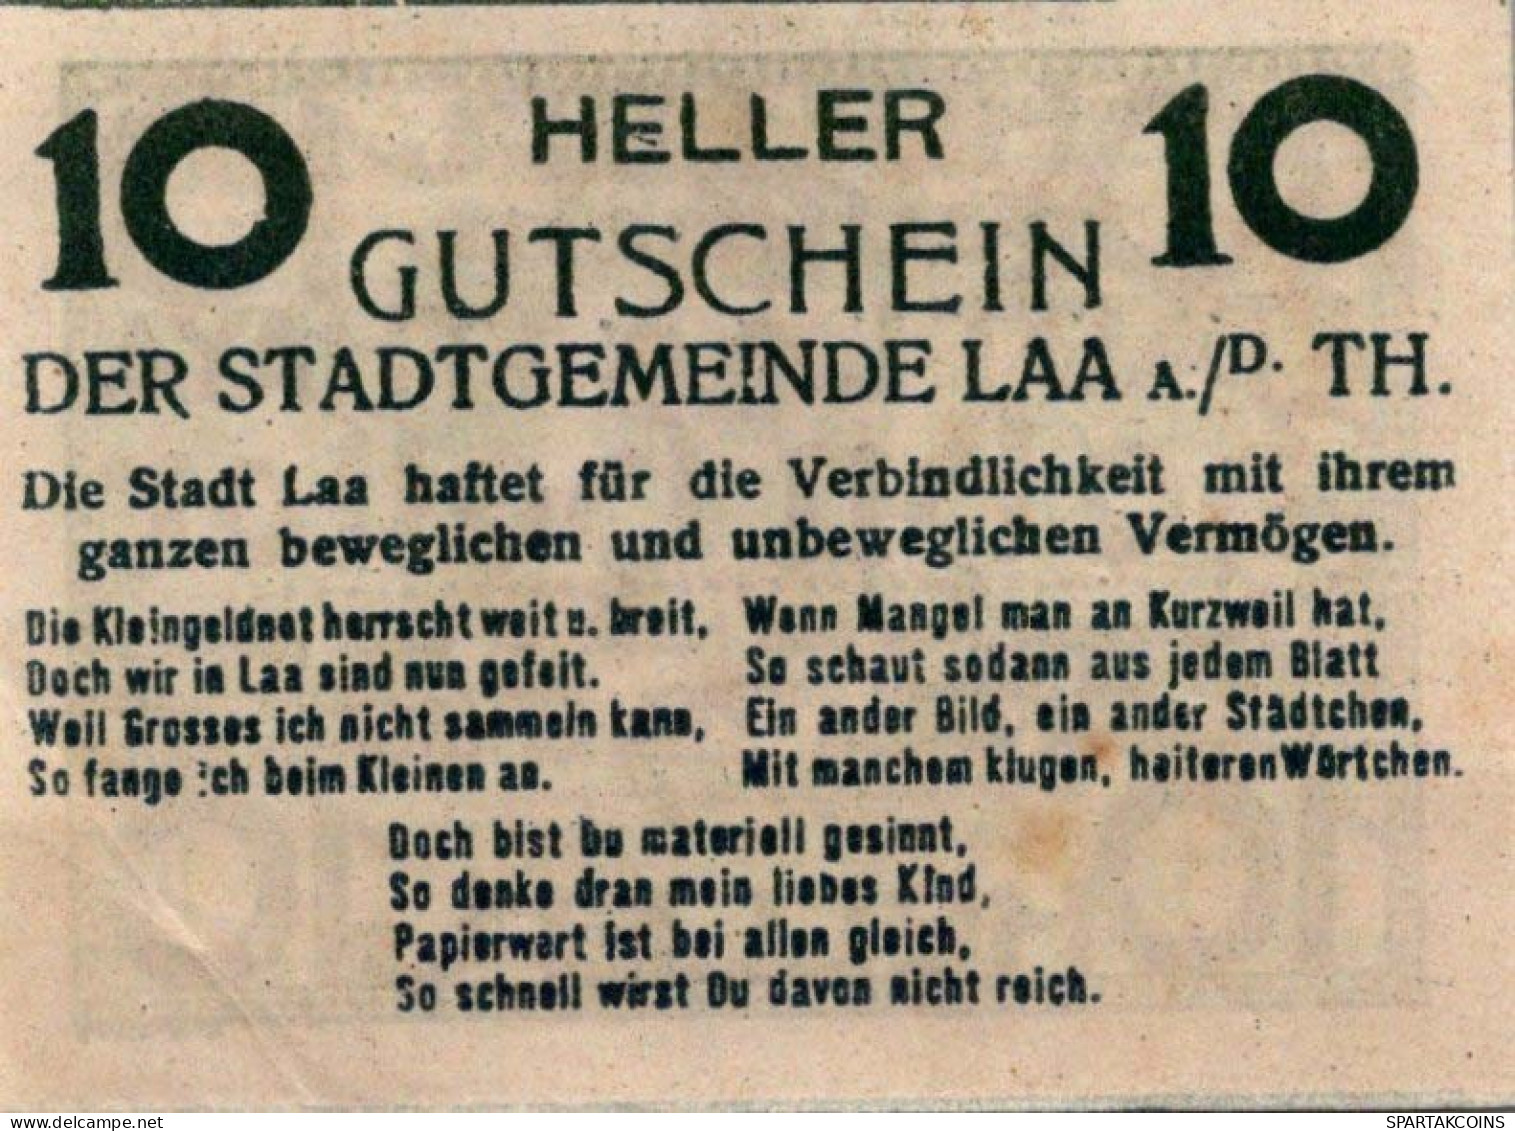 10 HELLER 1920 Stadt Laa An Der Thaya Österreich Notgeld Banknote #PD826 - [11] Local Banknote Issues